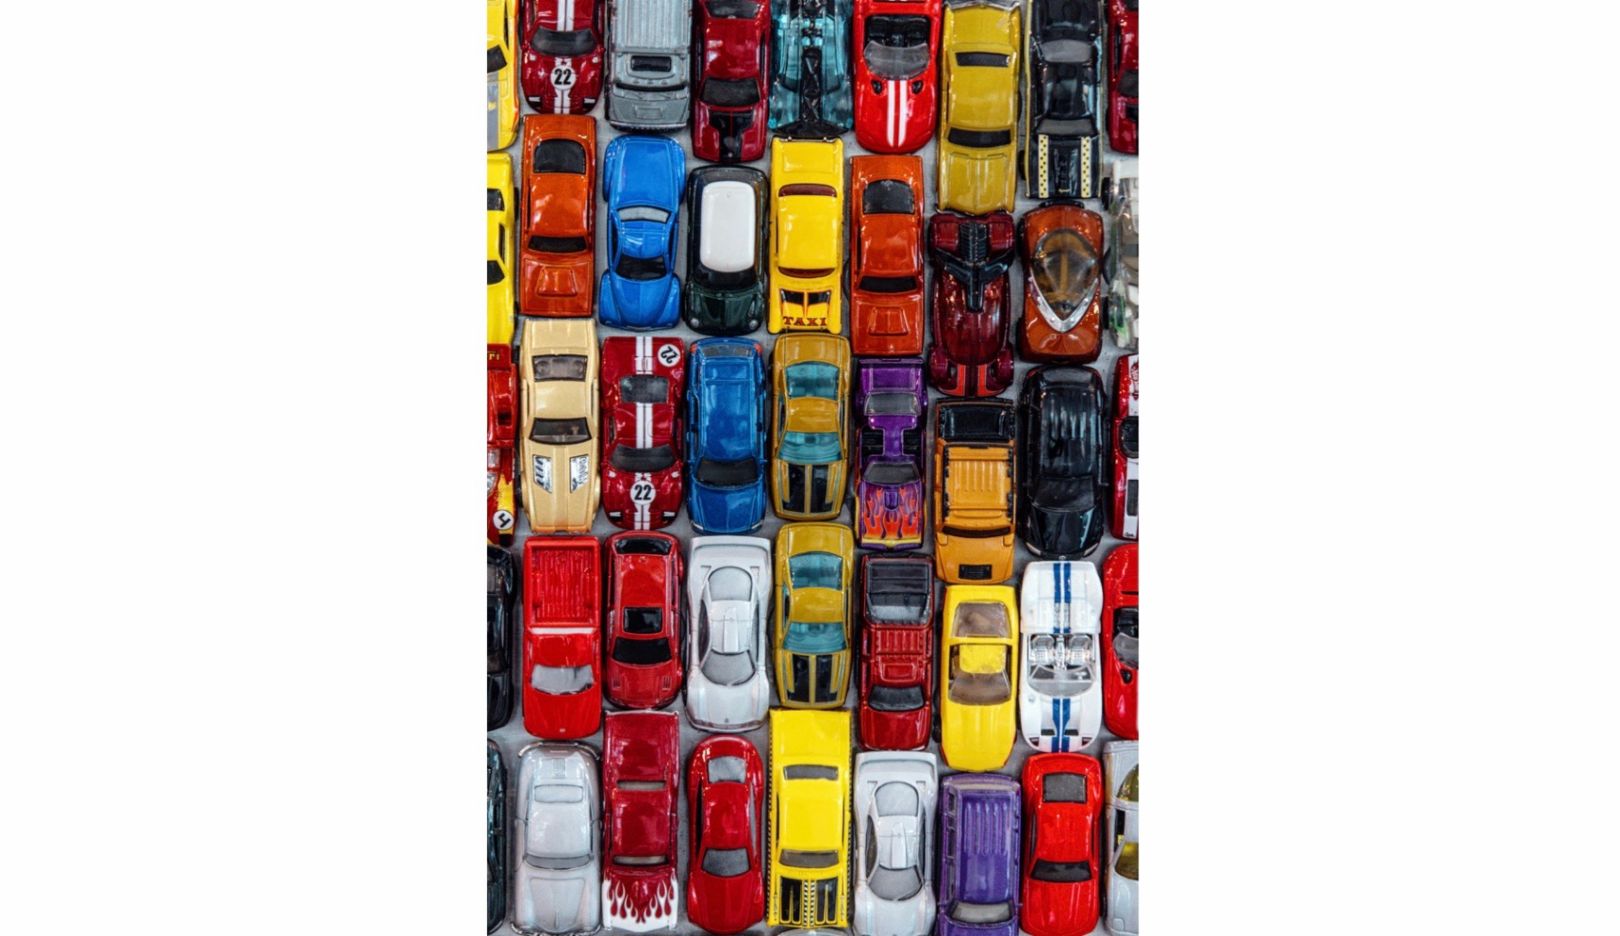 Arte negli spazi pubblici: per decorare un parcheggio coperto a Stockton, California, Huether ha creato un collage di 30.000 macchinine giocattolo.